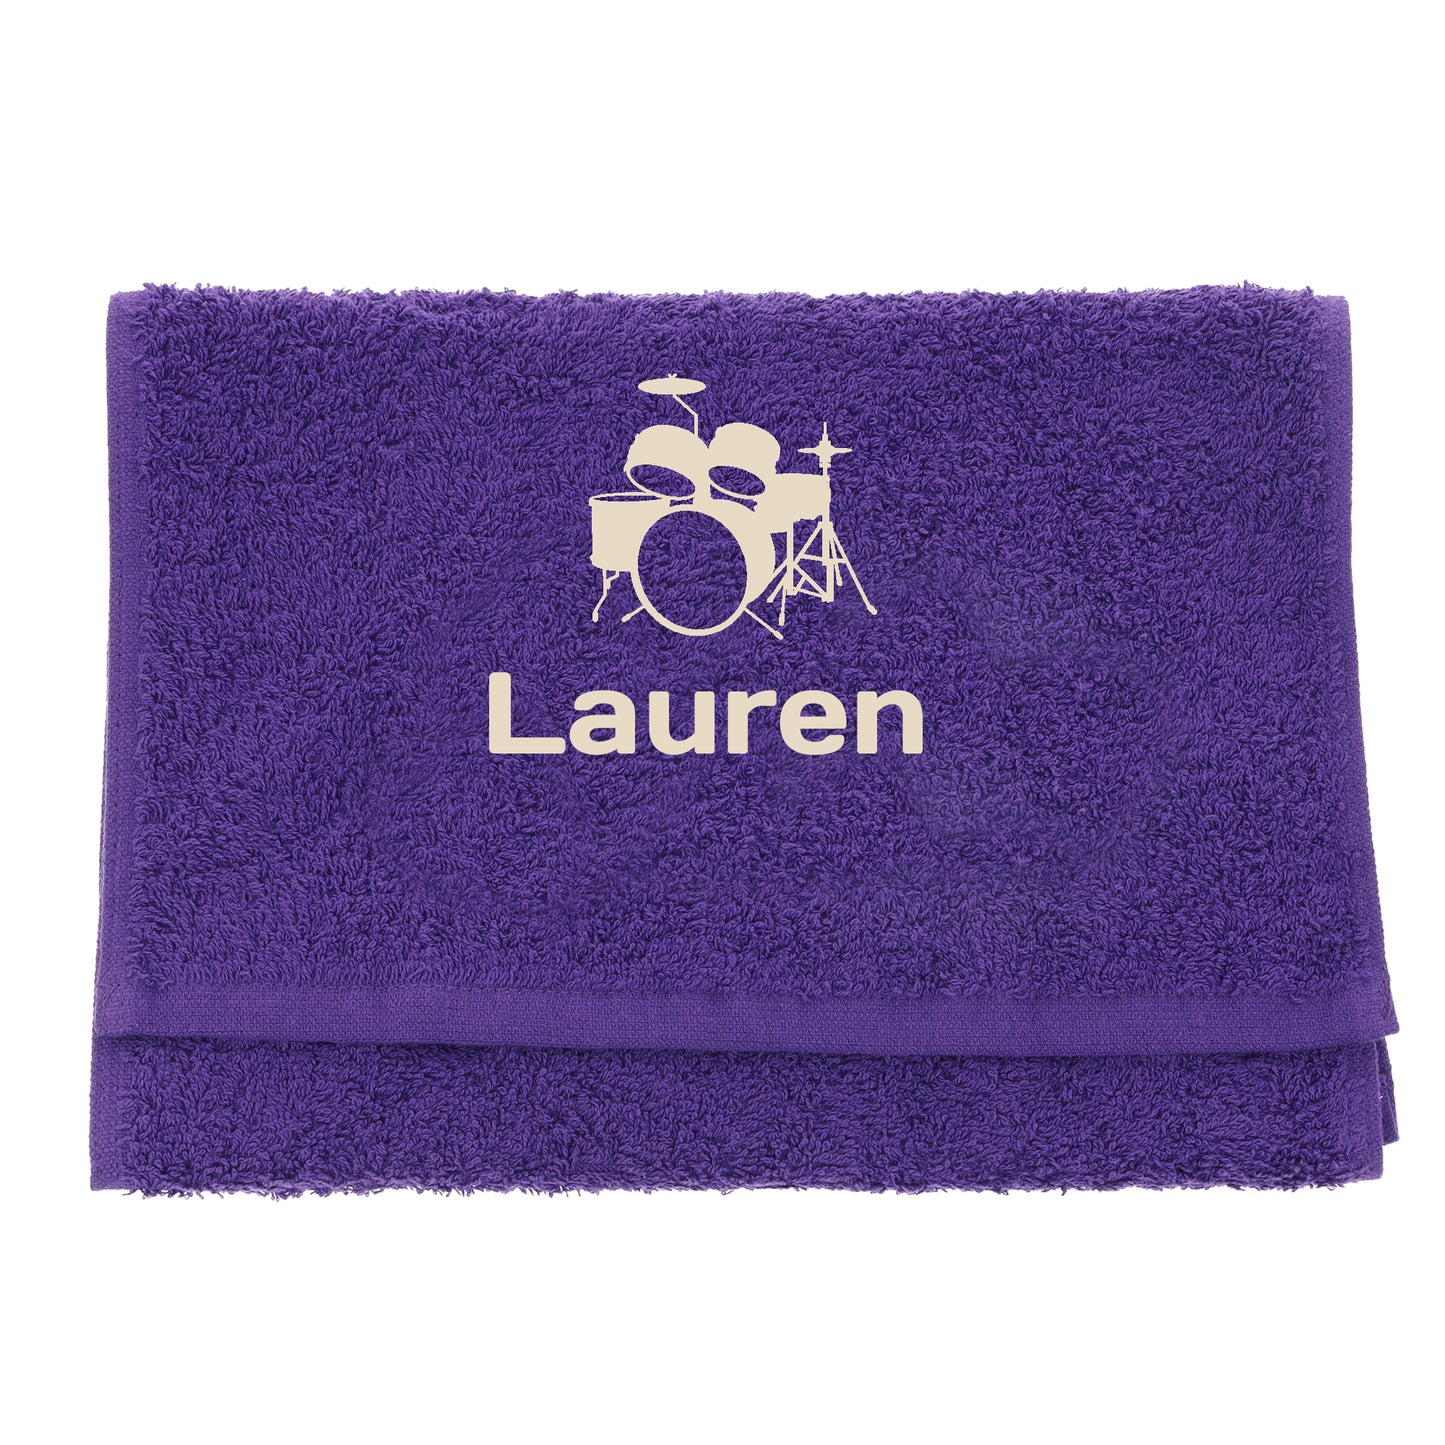 Personalised Embroidered Drummer Towel  - Always Looking Good - Purple  